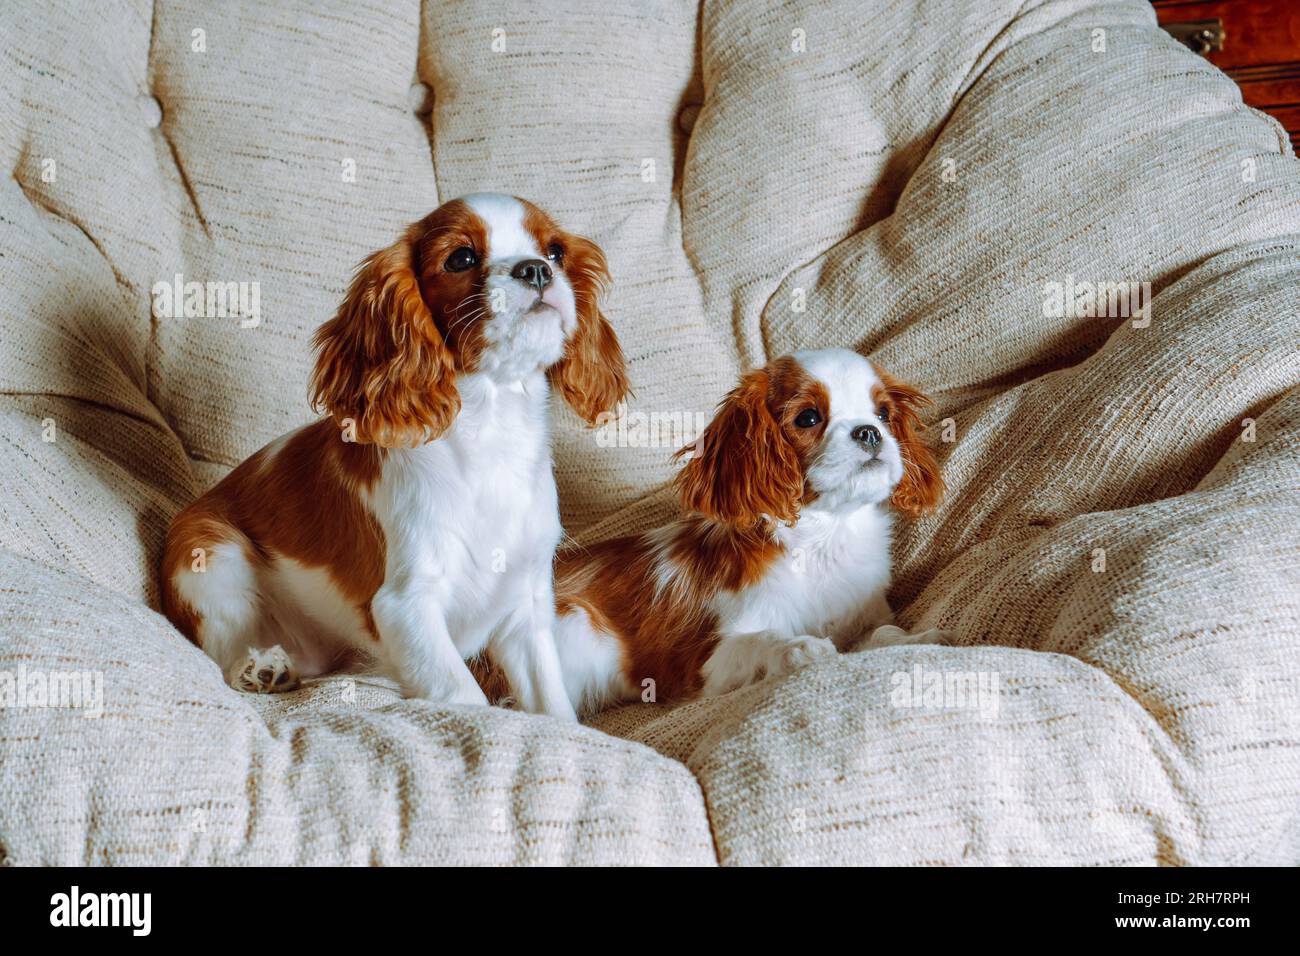 Retrato de perros blancos rojizos Cavalier King Charles Spaniel que se relaja en un sillón grande y suave. Cachorros amigos viendo cosas atractivas en frente Foto de stock